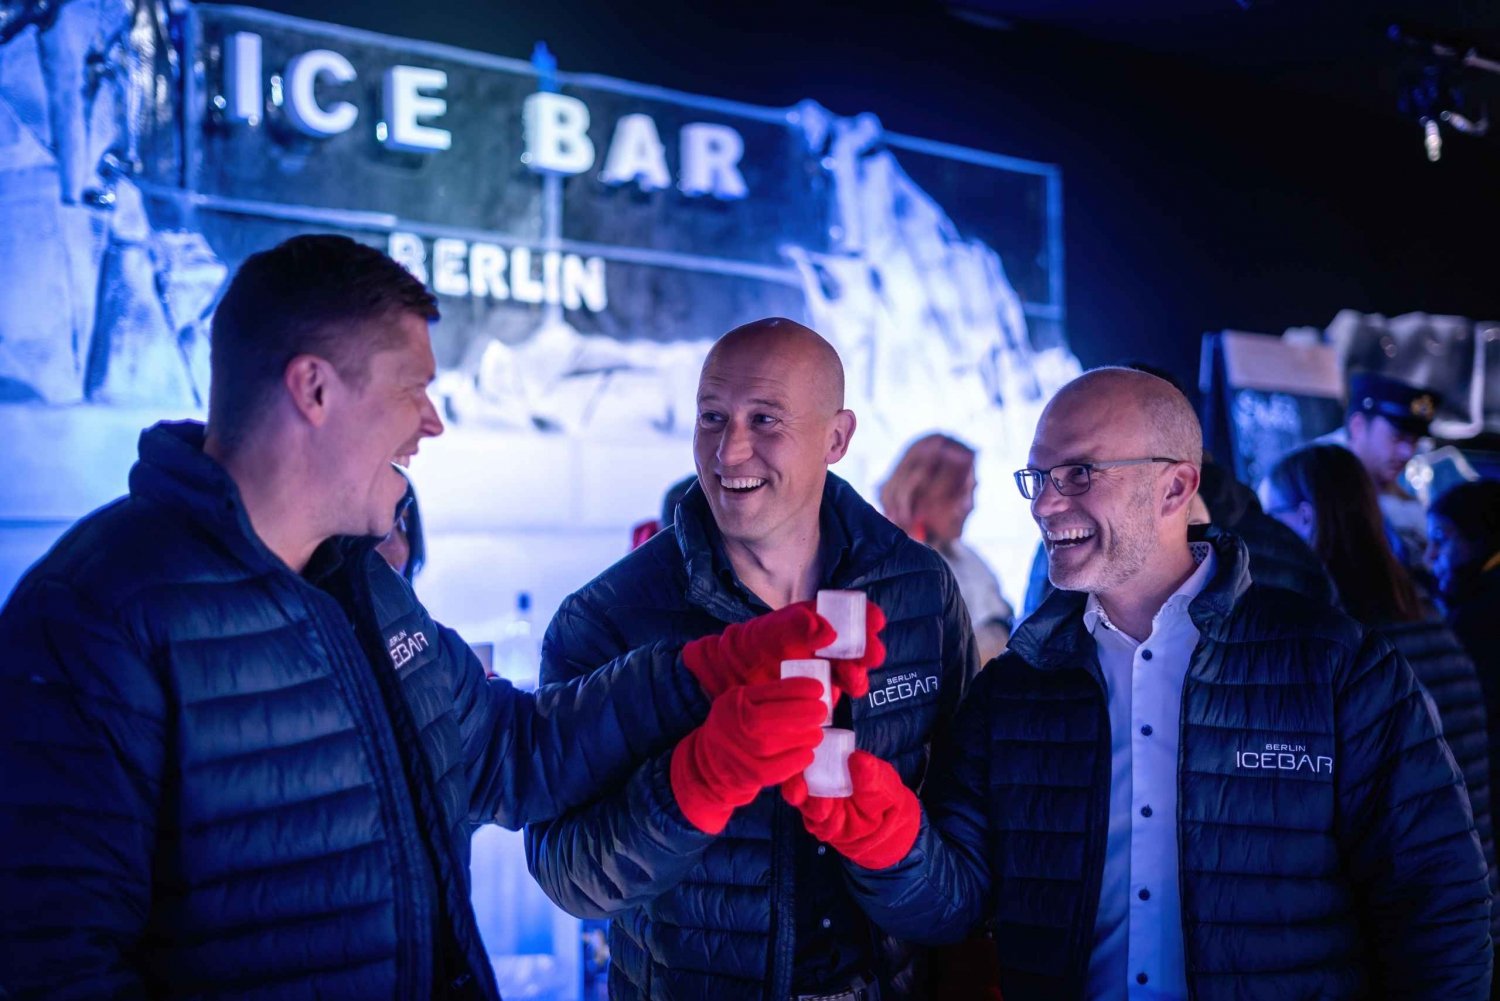 Berliini: Icebar sisäänpääsy ja ilmaiset juomat.